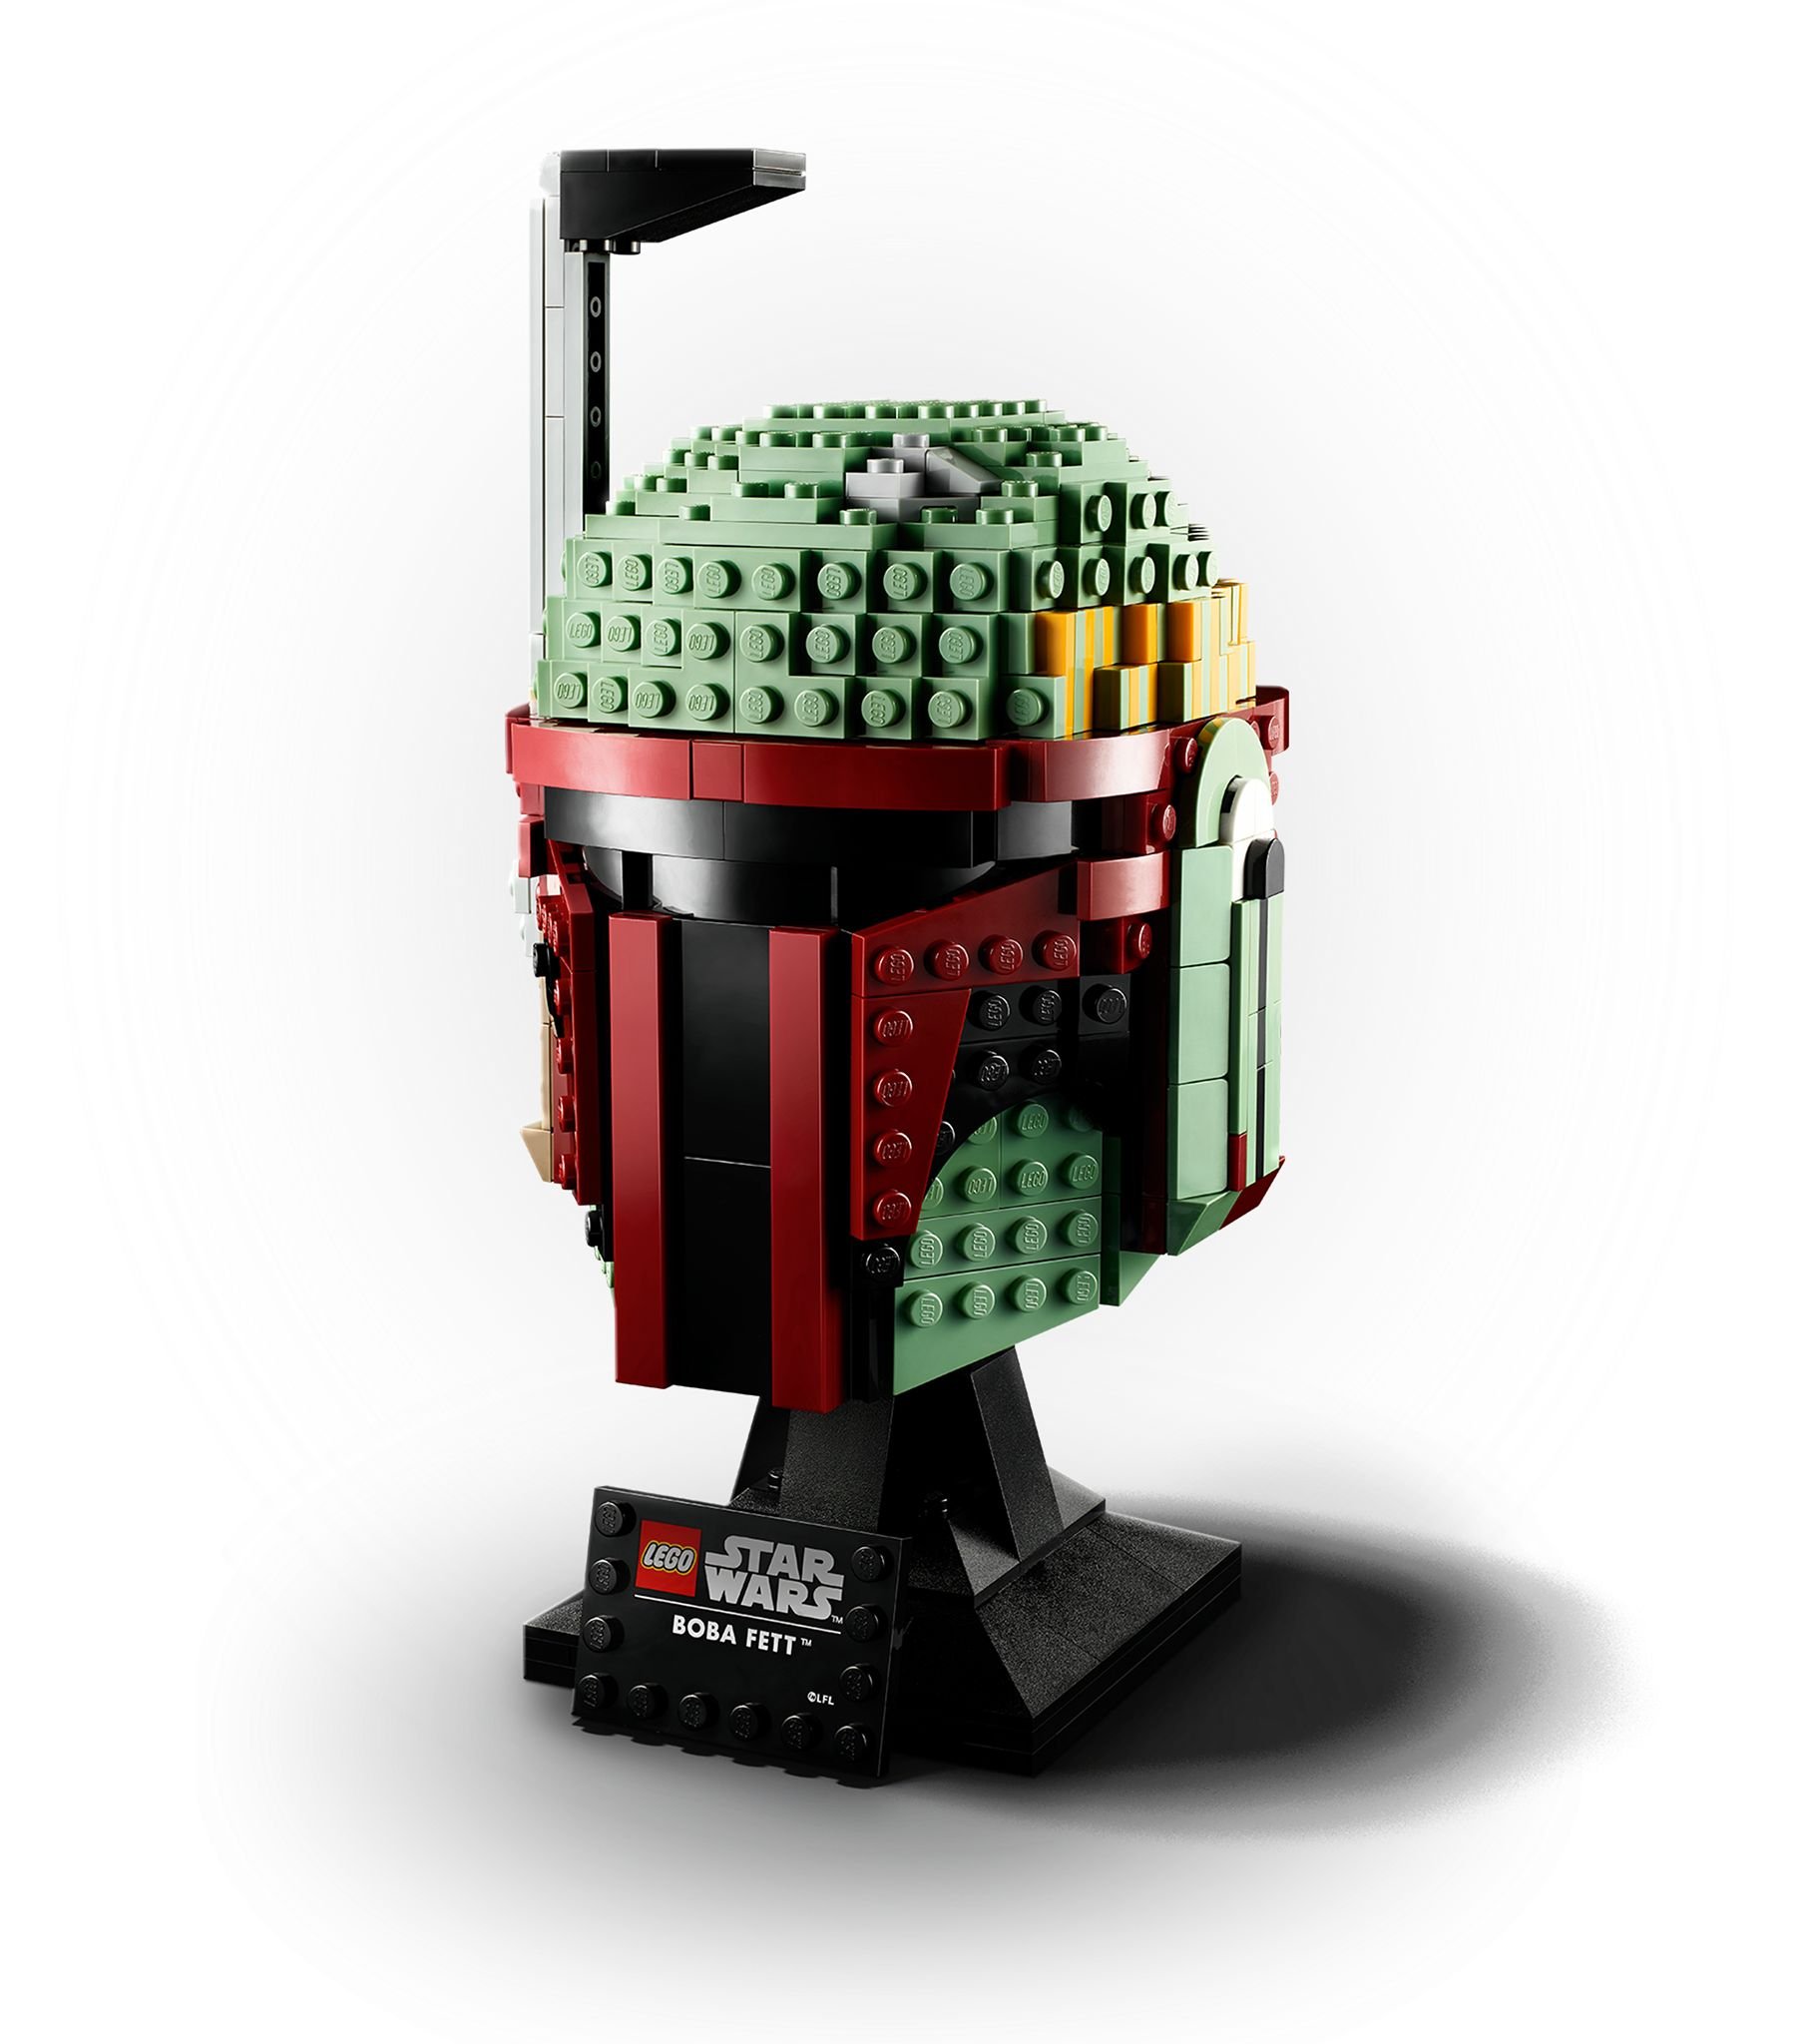 LEGO Star Wars 75277 Boba Fett Helm LEGO_75277_alt2.jpg